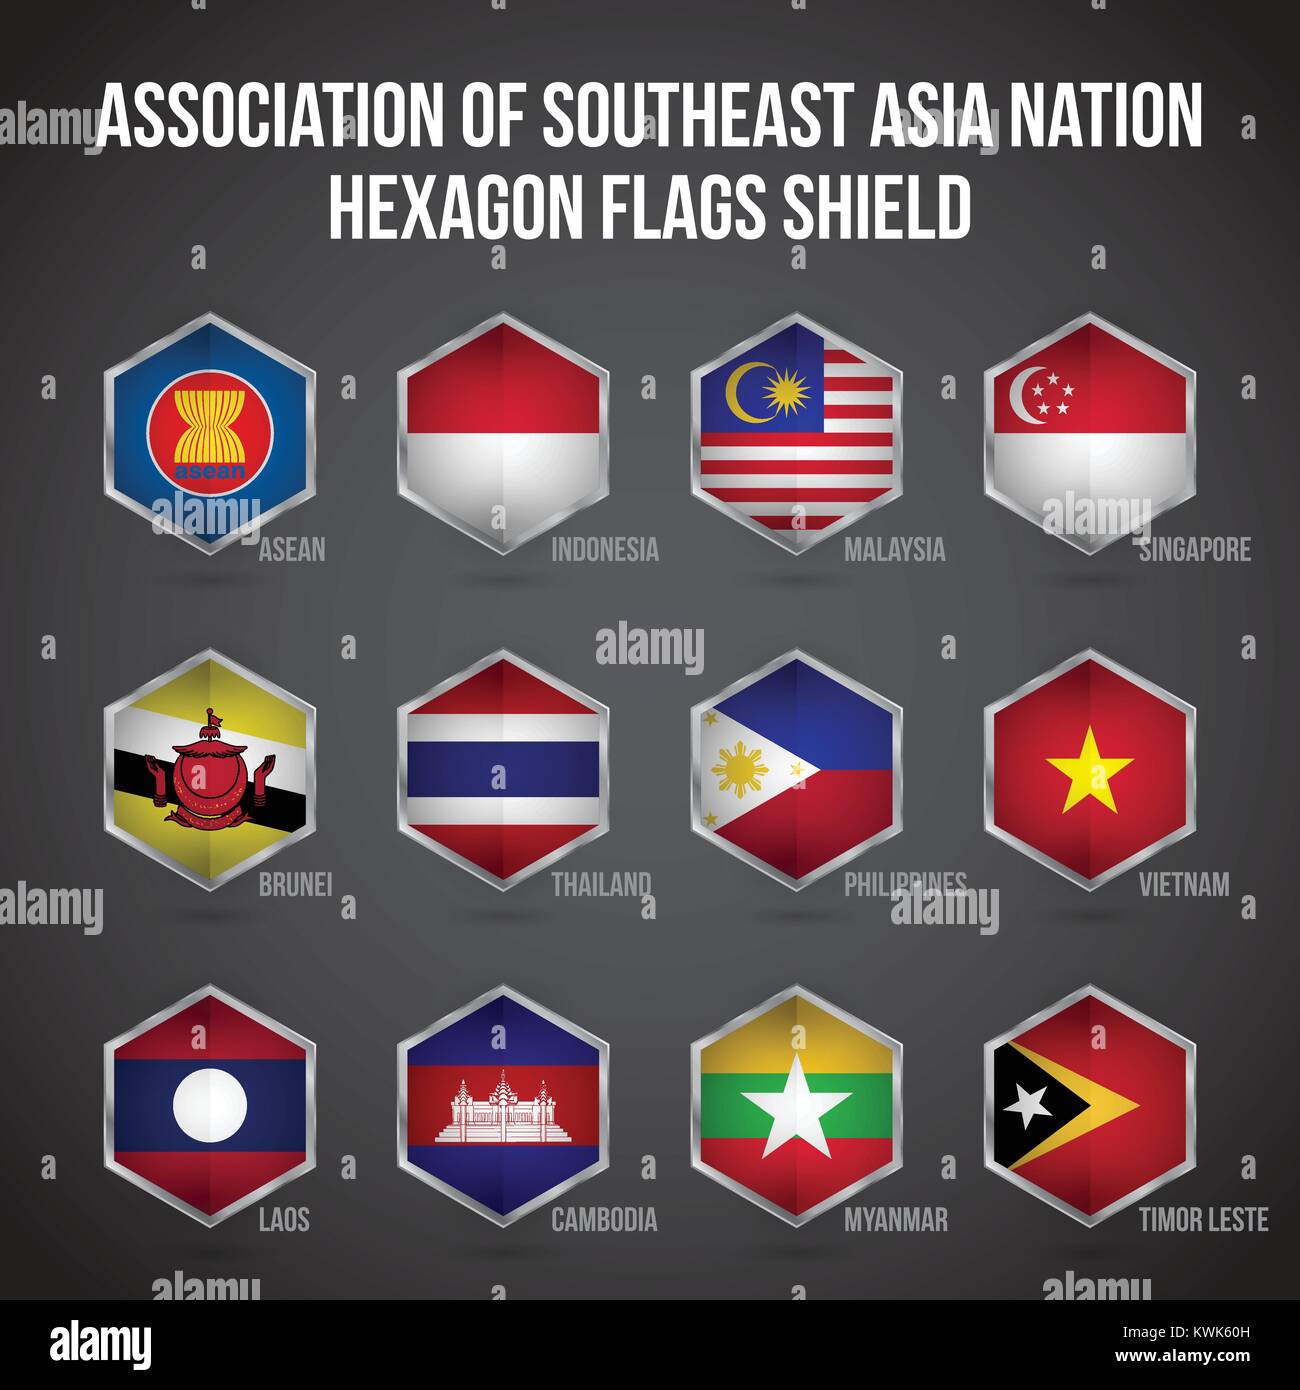 Asociación de Naciones del Asia Sudoriental Escudo banderas hexagonal Ilustración del Vector